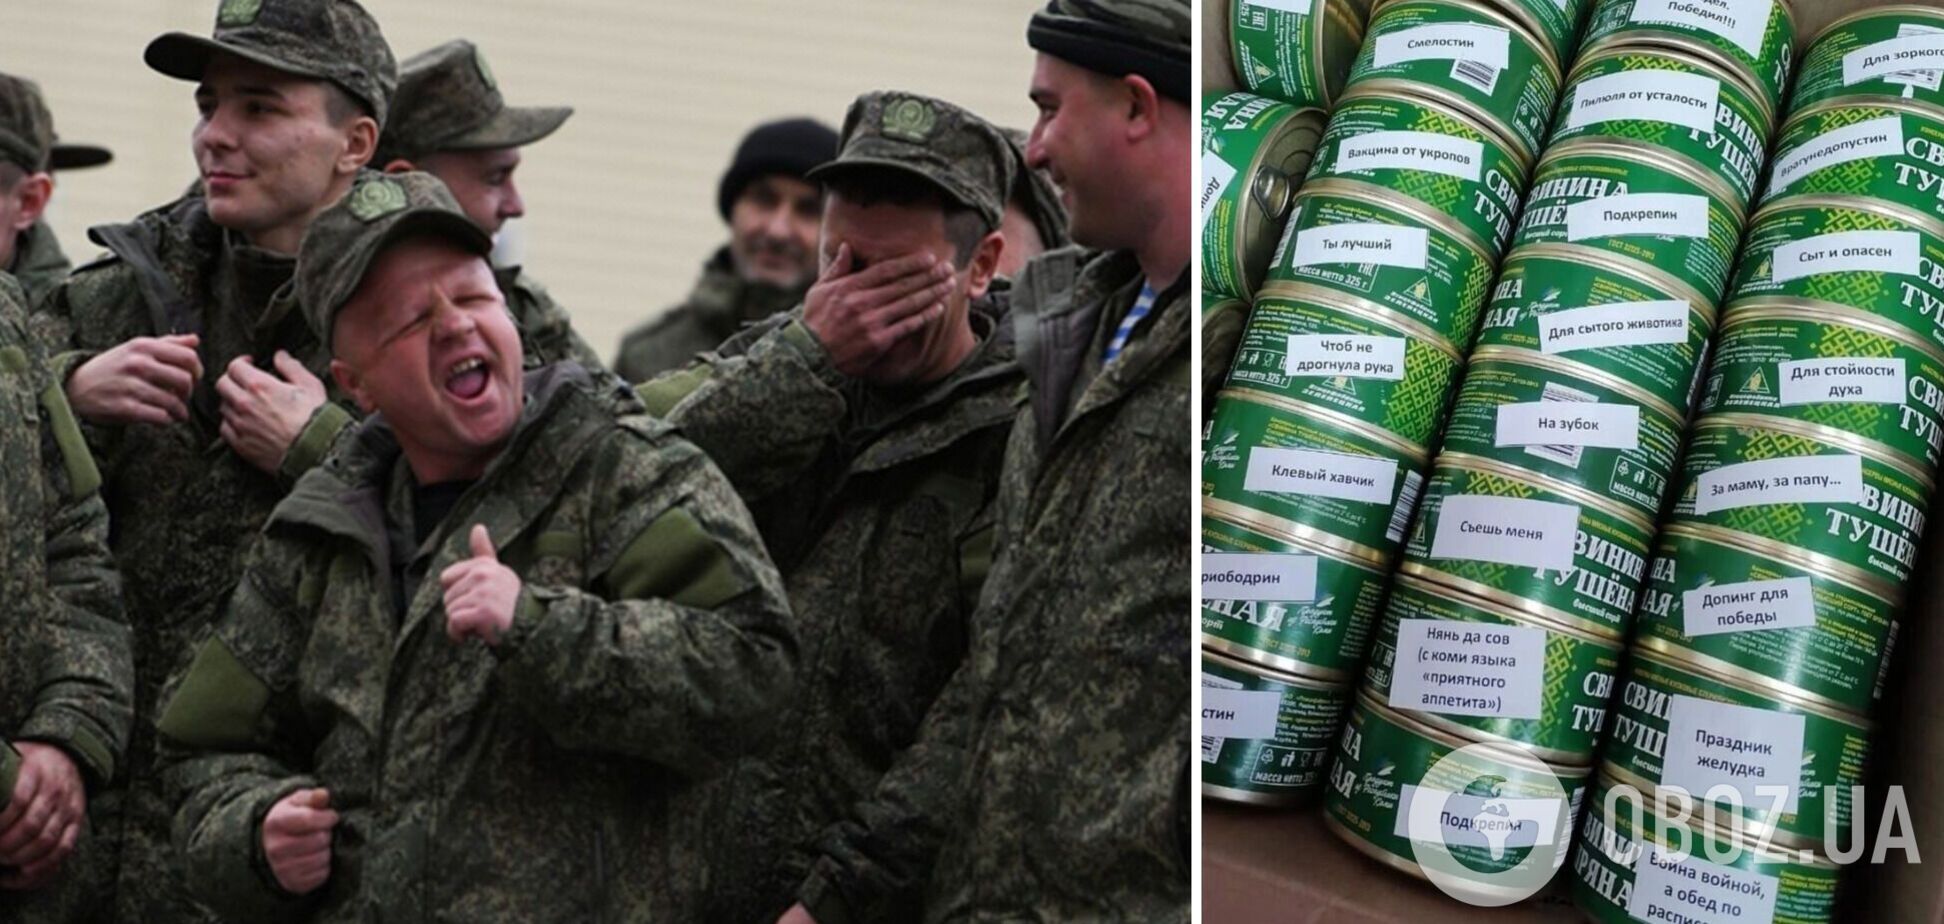 'За папу, за маму' и 'Праздник для желудка': в России приготовили 'креативные' консервы для оккупантов на передовую. Фото